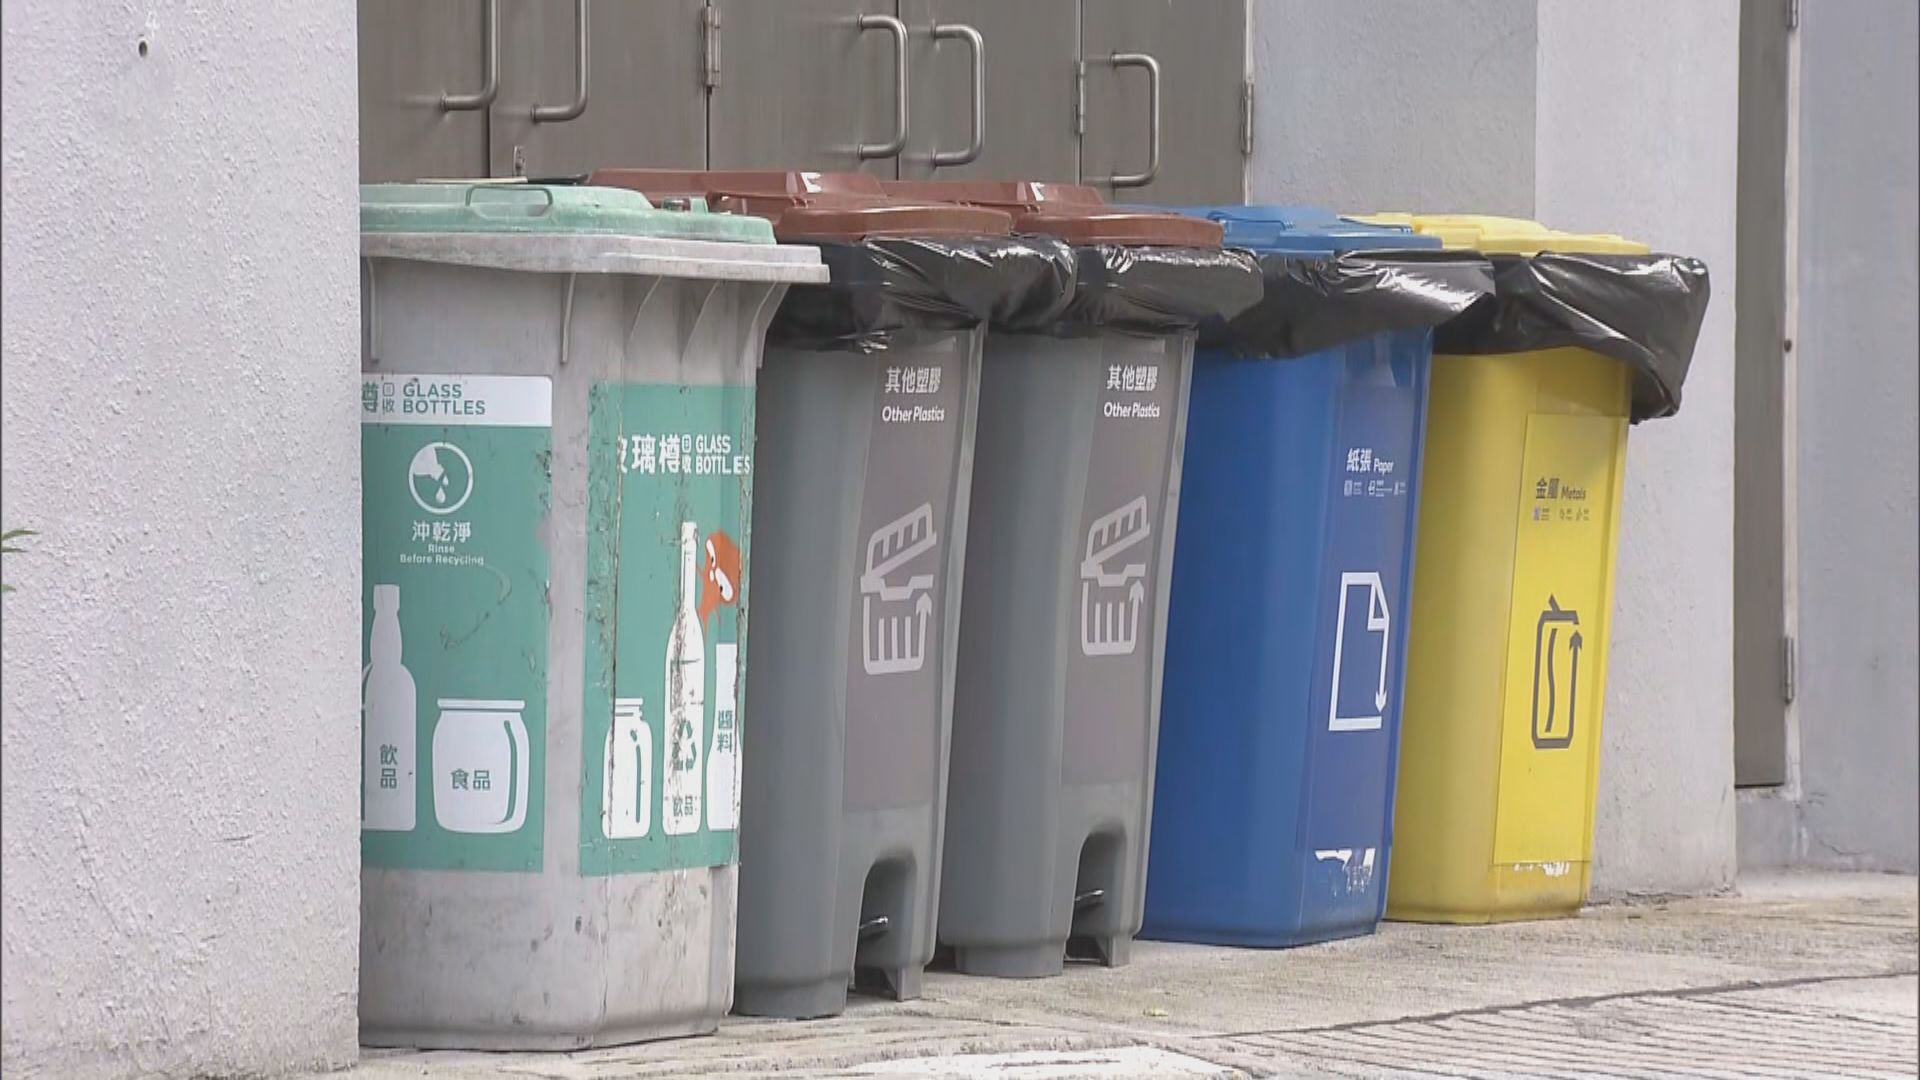 垃圾徵費先行先試計劃下周一實施 區議員稱連翠邨居民憂影響衞生